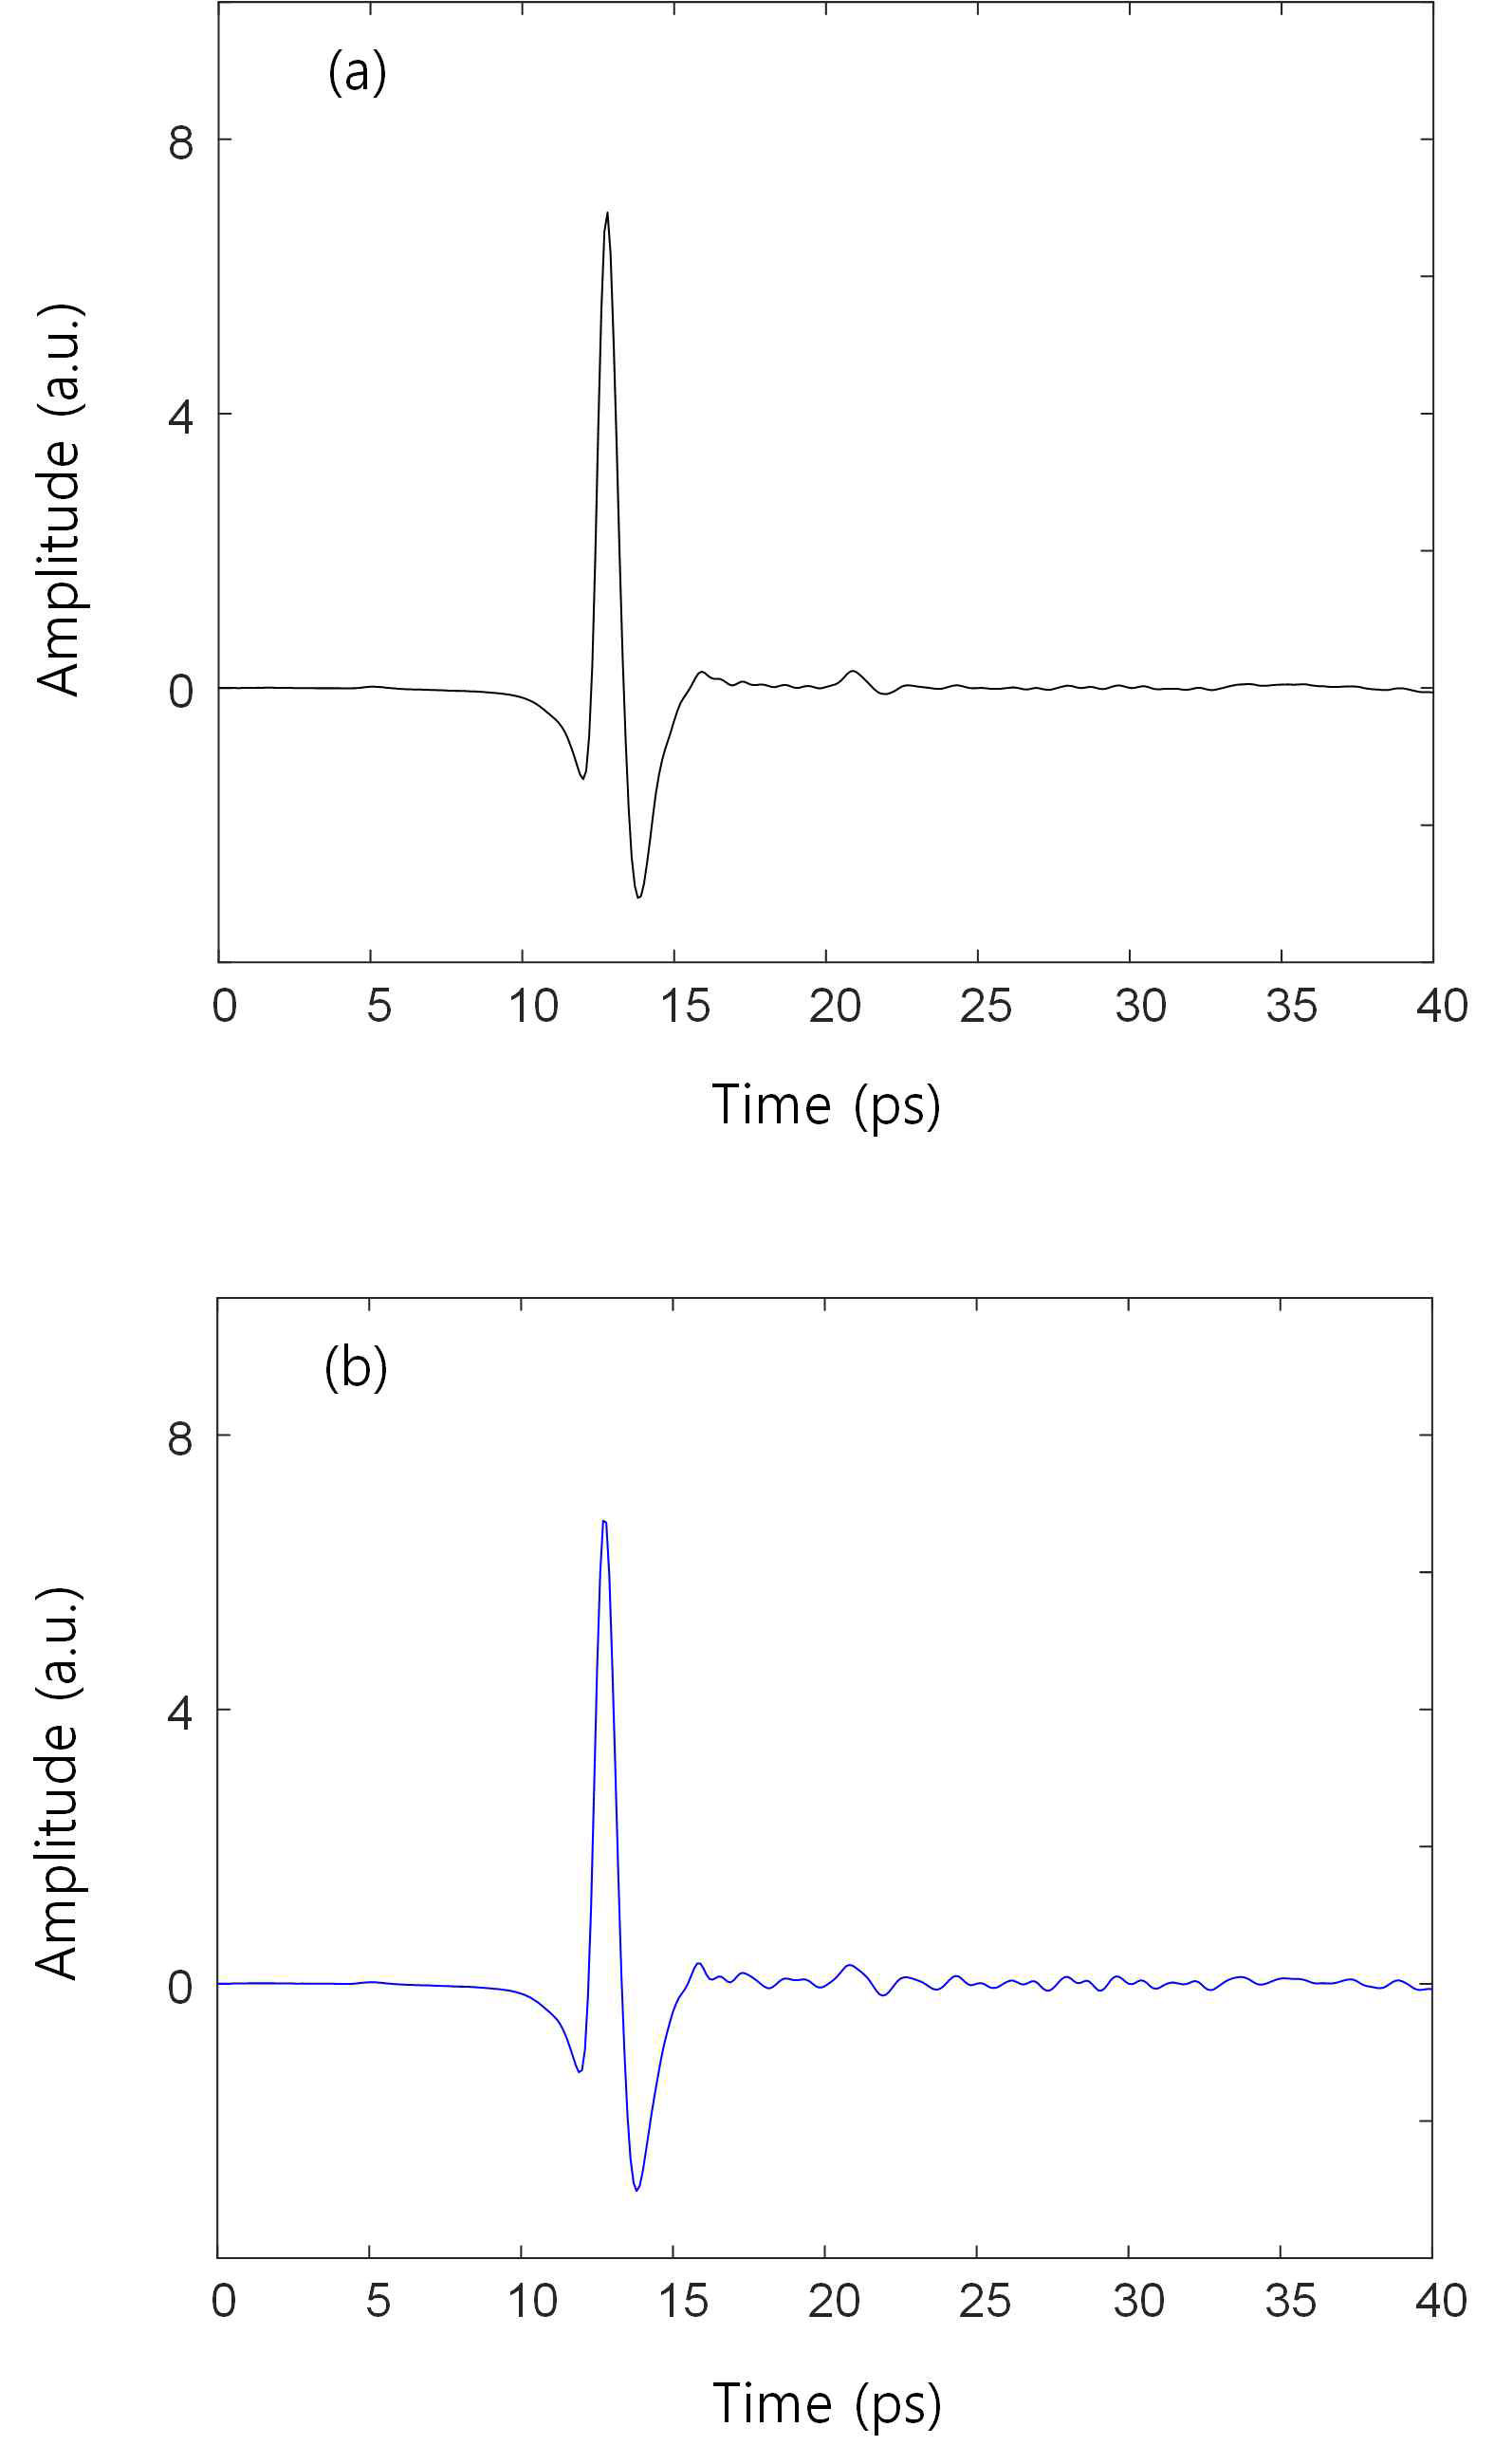 샘플 A가 있을 때 통제된 환경과 (a) 일반적인 대기에서 (b) 측정한 테라헤르츠 신호